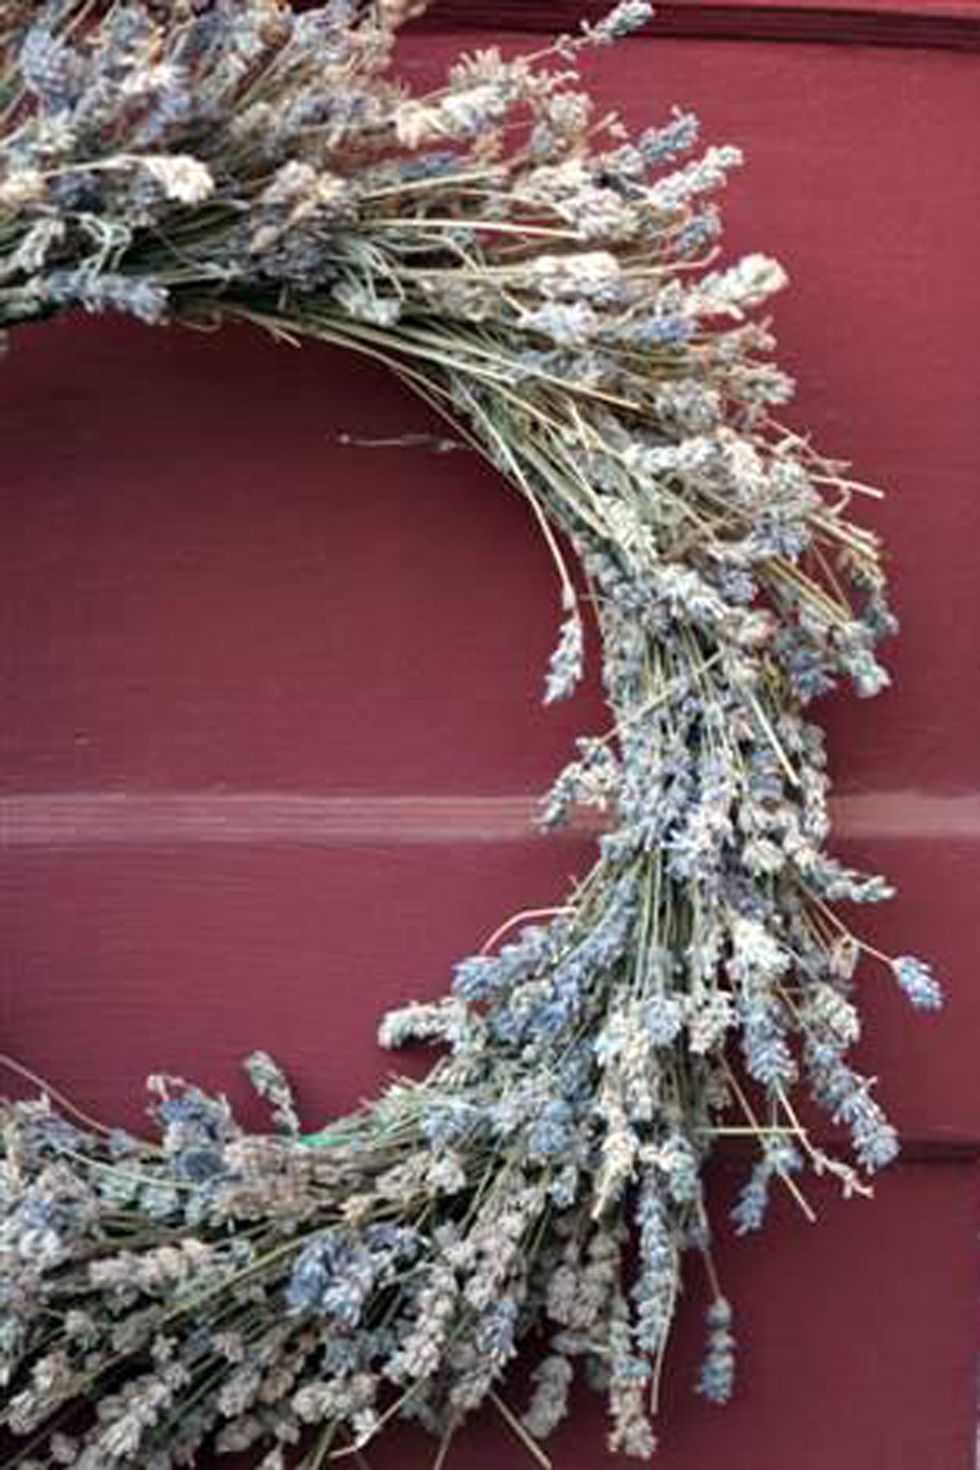 dried lavender wreath